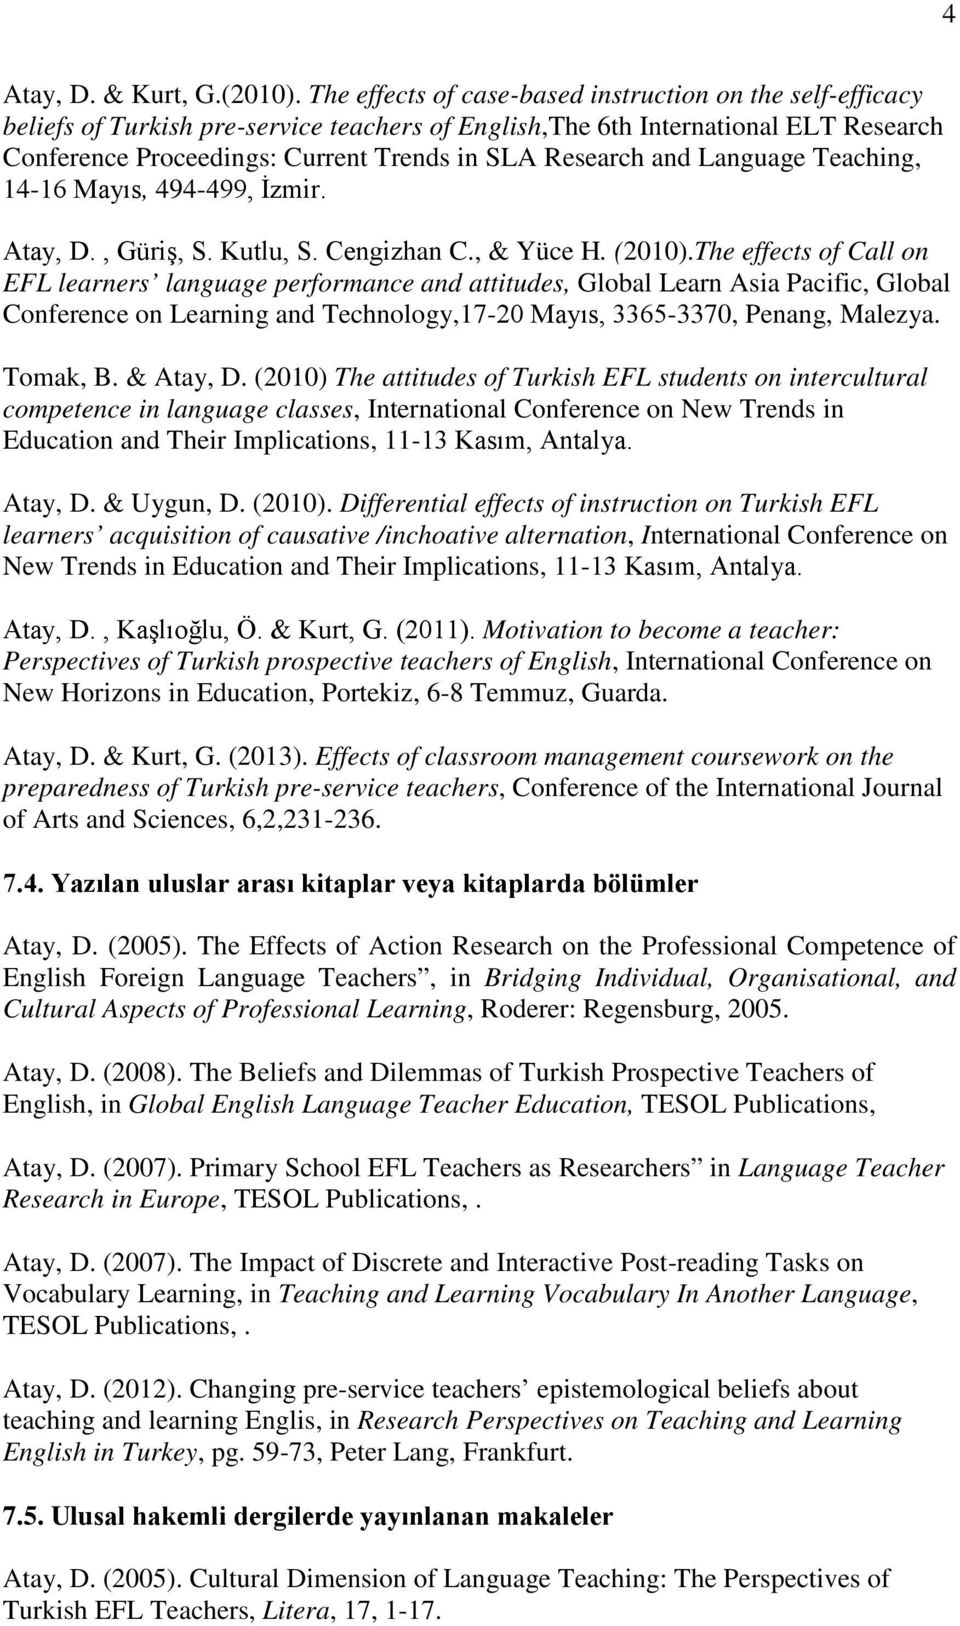 and Language Teaching, 14-16 Mayıs, 494-499, İzmir. Atay, D., Güriş, S. Kutlu, S. Cengizhan C., & Yüce H. (2010).